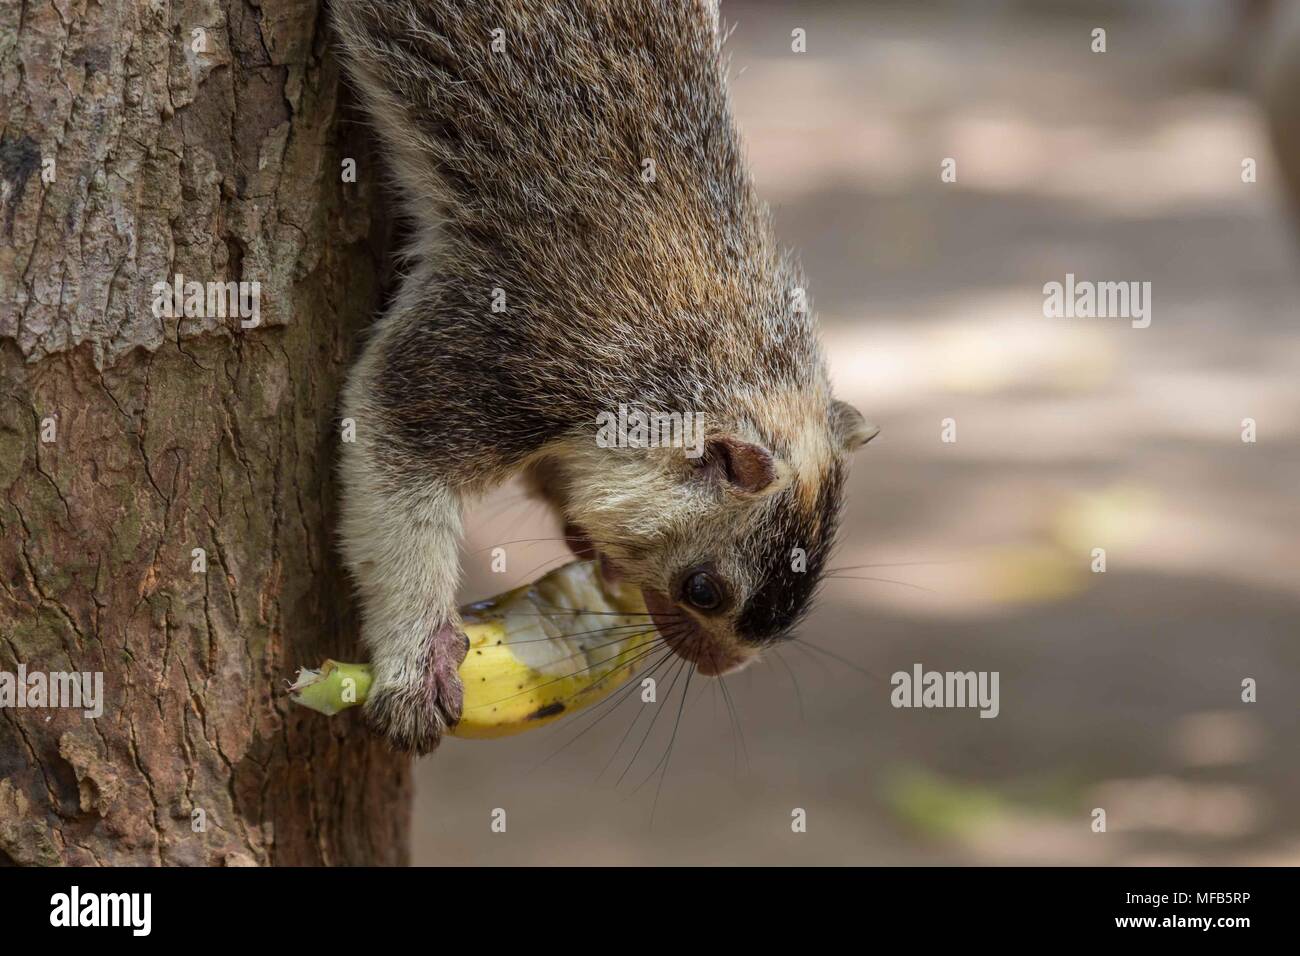 Giant squirrel in Sri Lanka Stock Photo